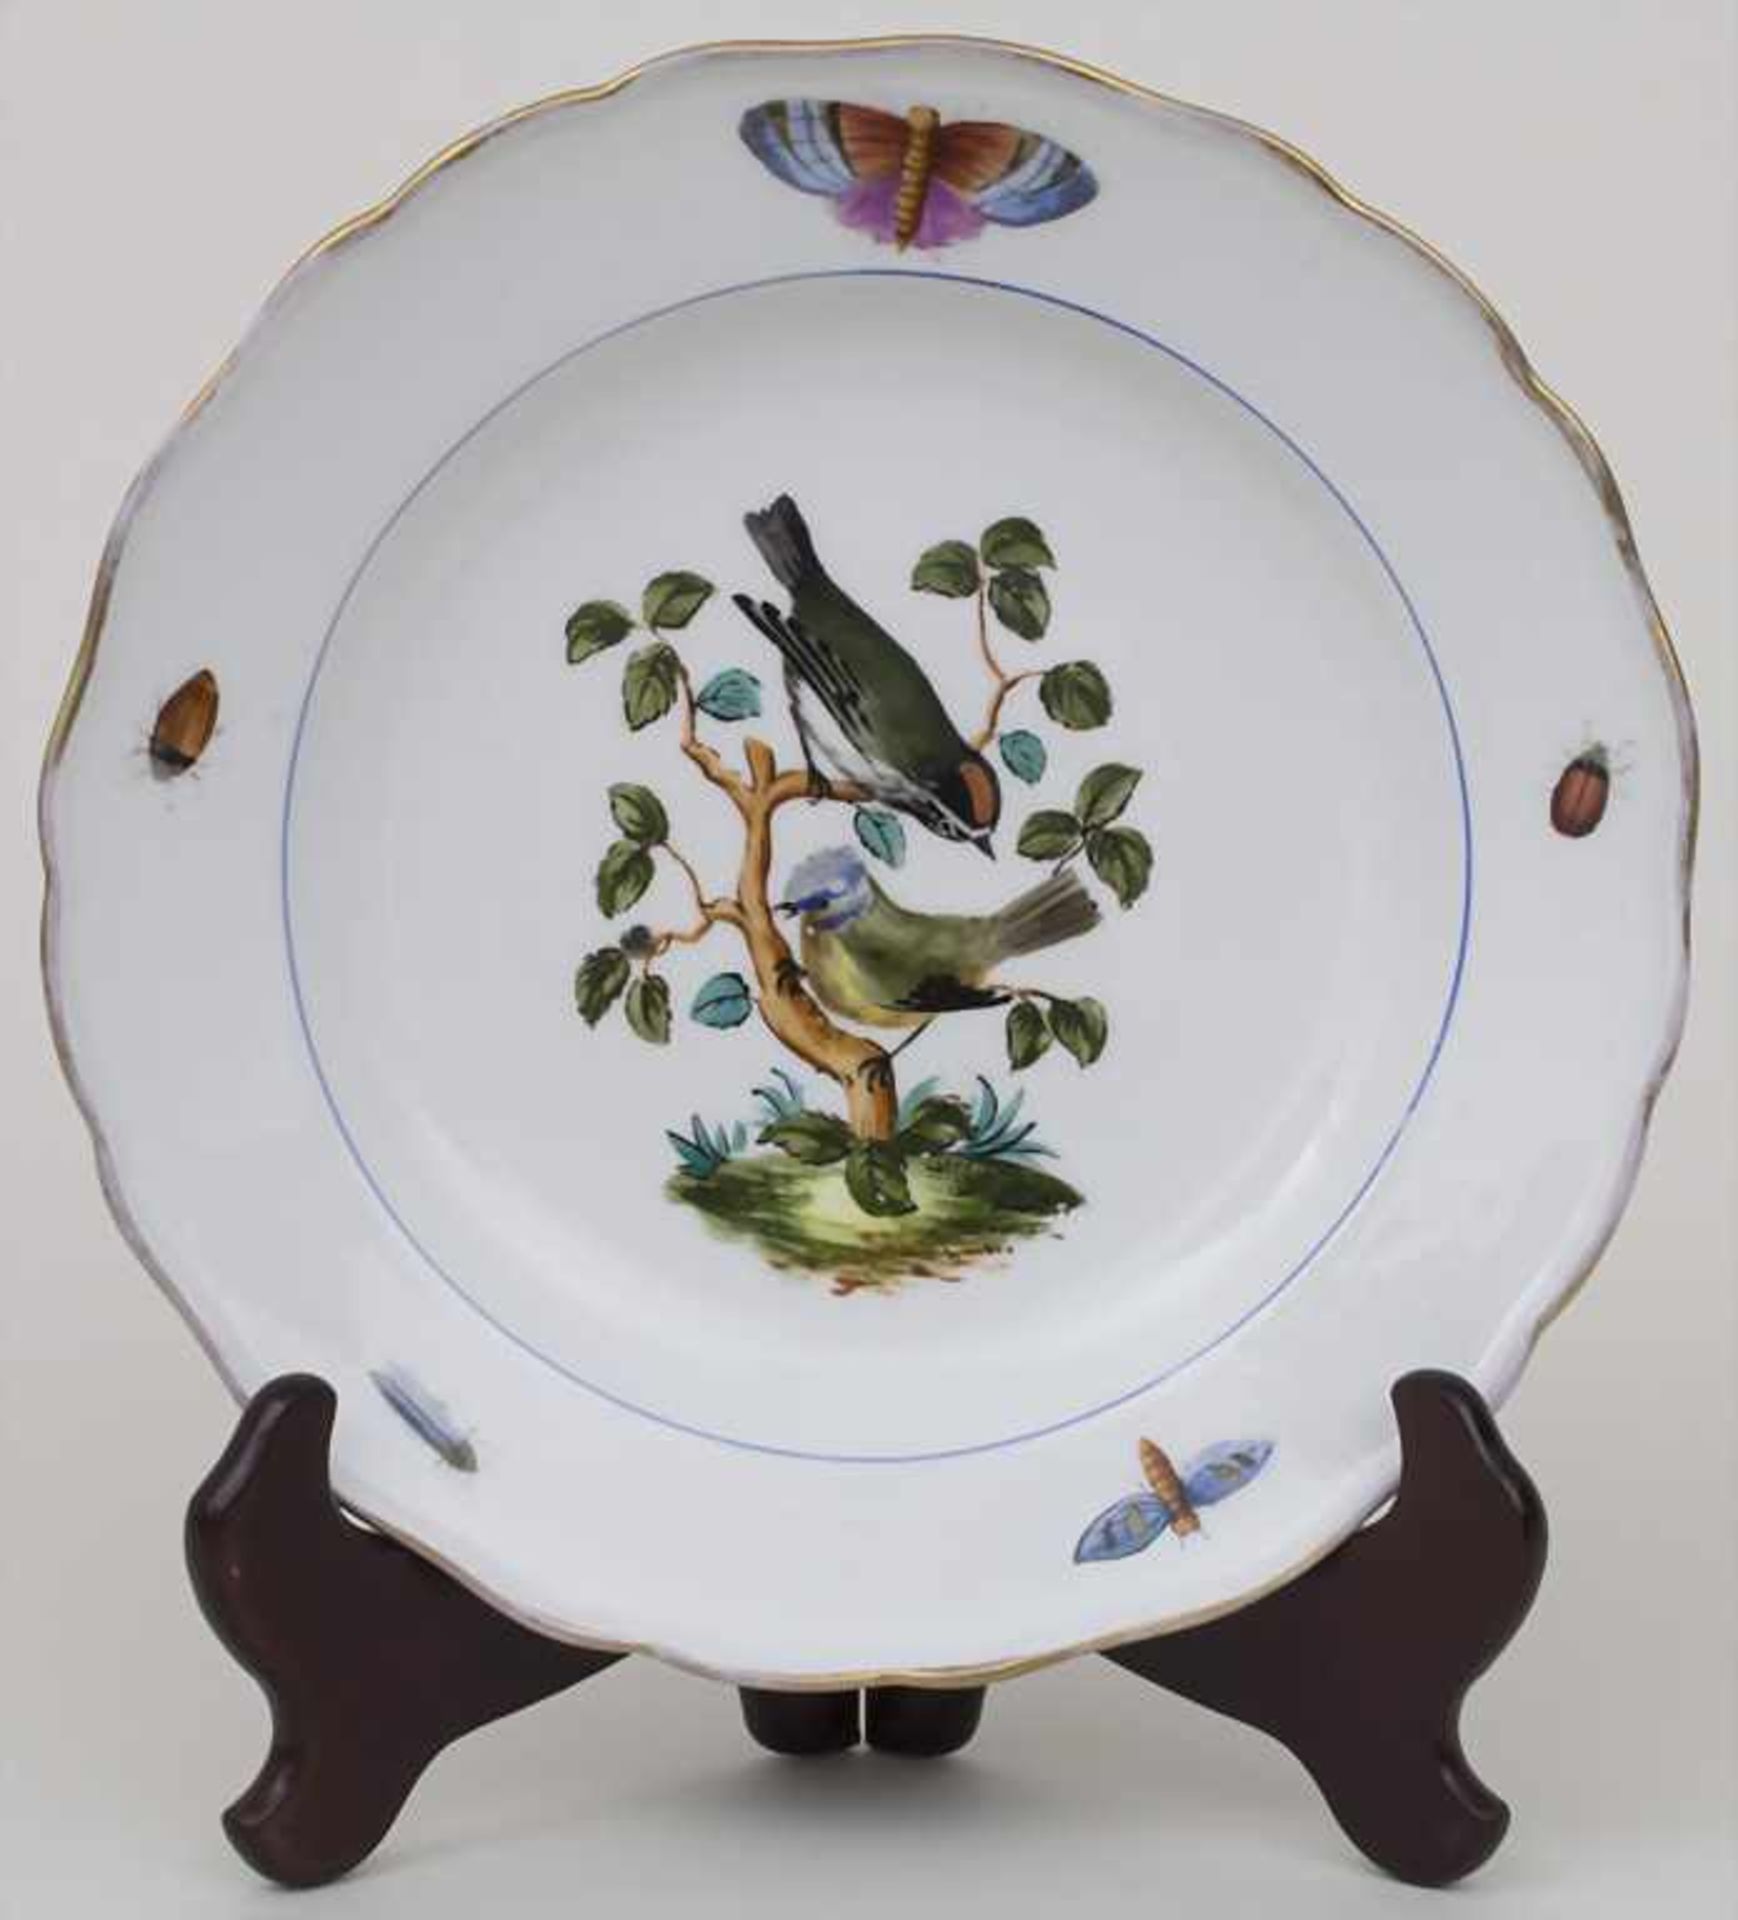 Teller mit Vogeldekor / A plate with birds, Meissen, 1. Hälfte 19. Jh.Material: Porzellan, polychrom